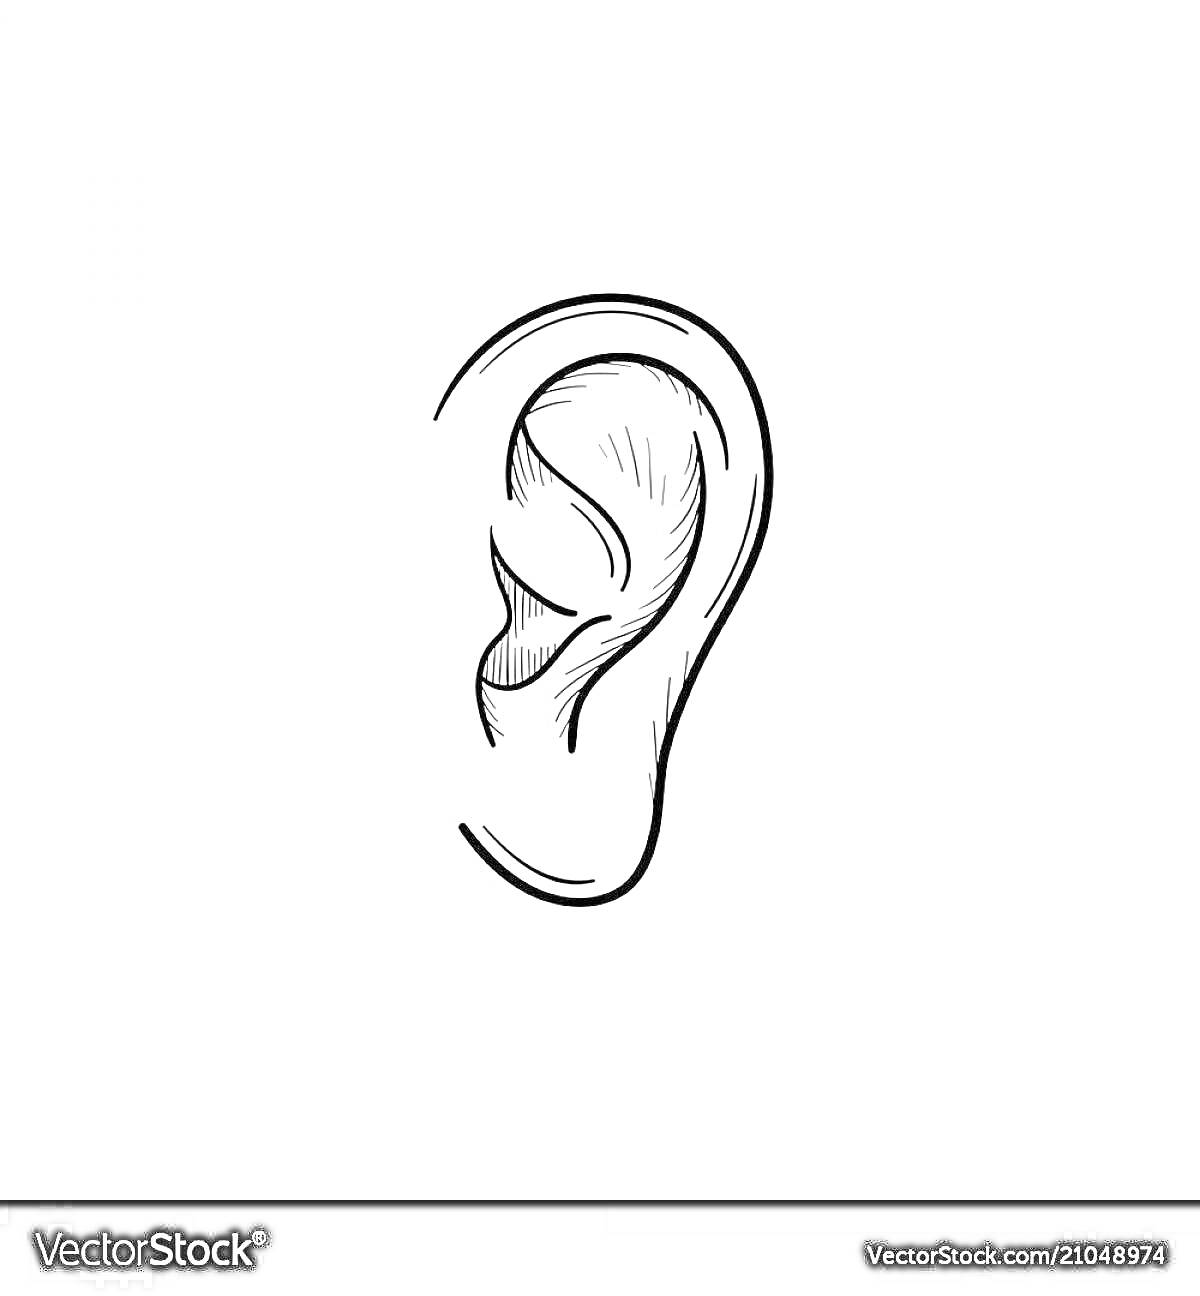 Раскраска Ухо — контурный рисунок уха, штриховой стиль